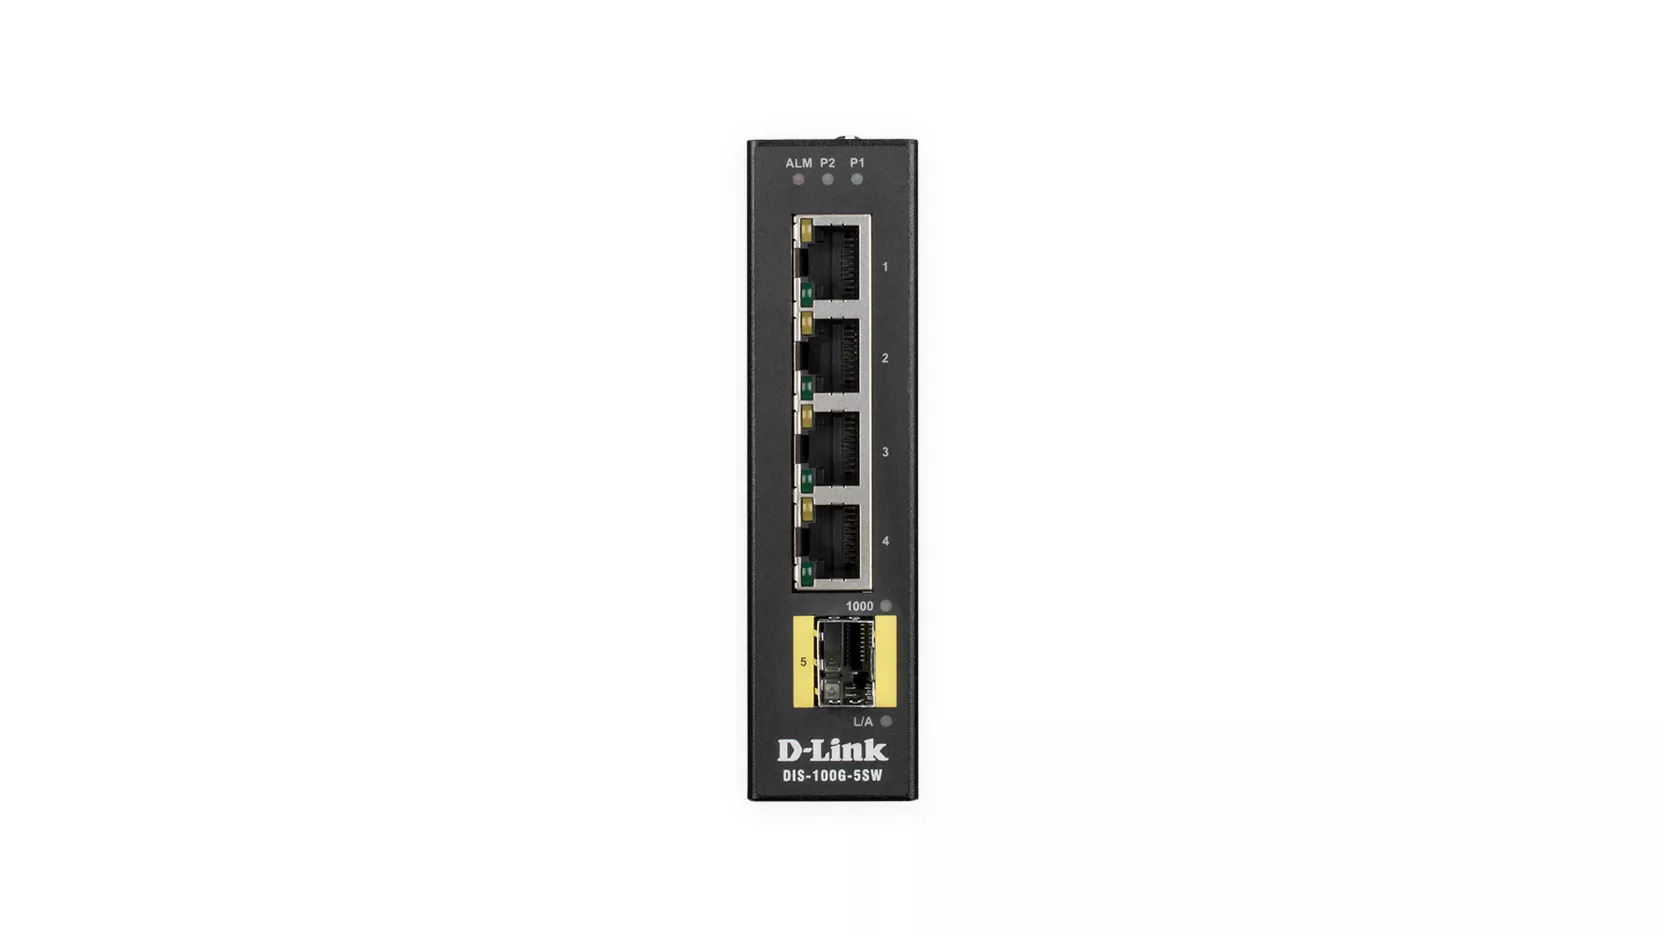 Vente D-LINK 5 Port Unmanaged Switch with 4 x D-Link au meilleur prix - visuel 2